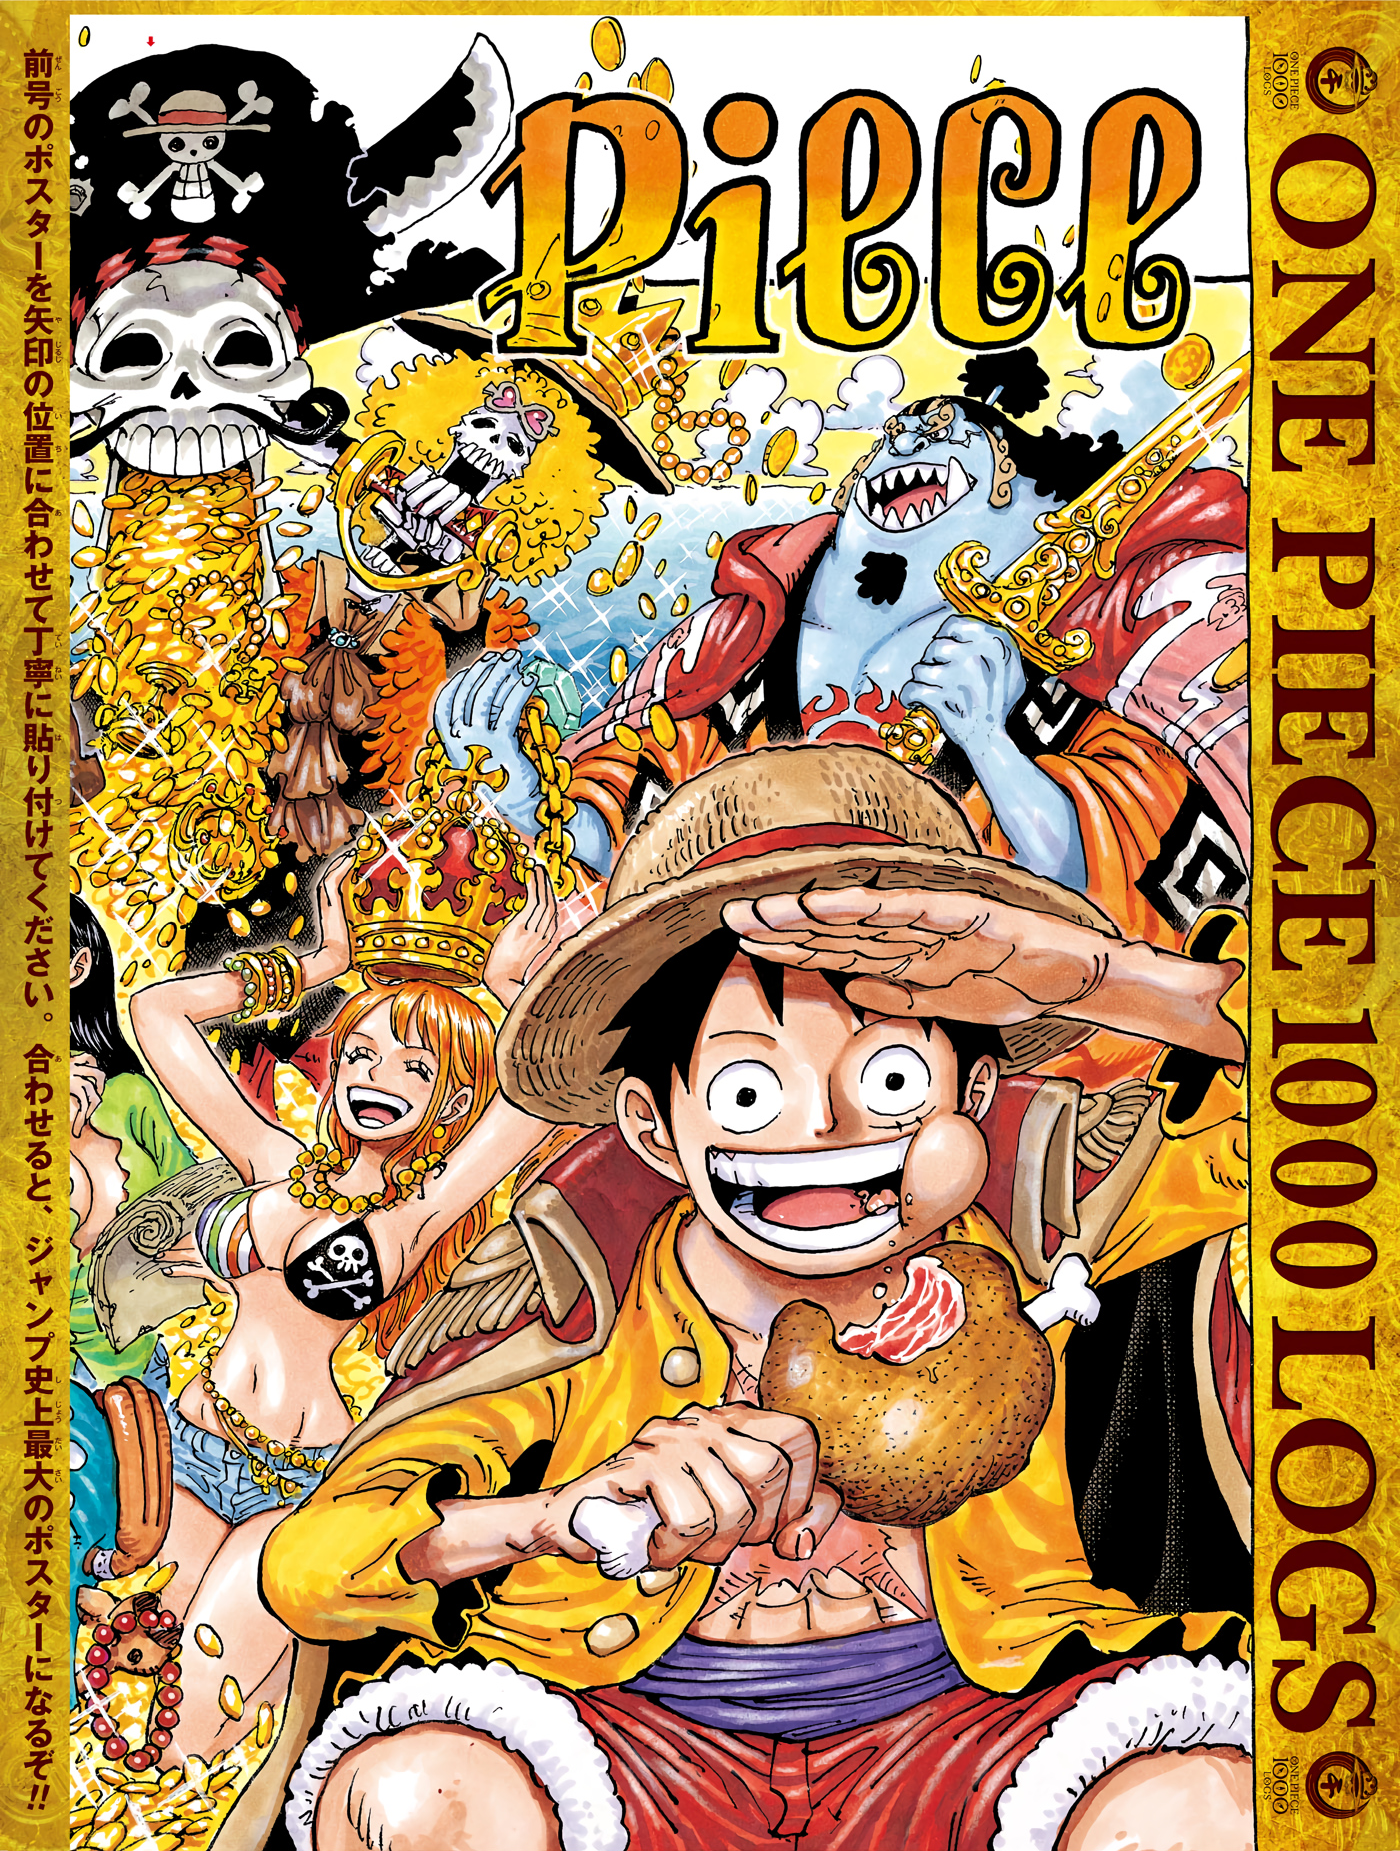 Capitulo 1000 One Piece Wiki Fandom